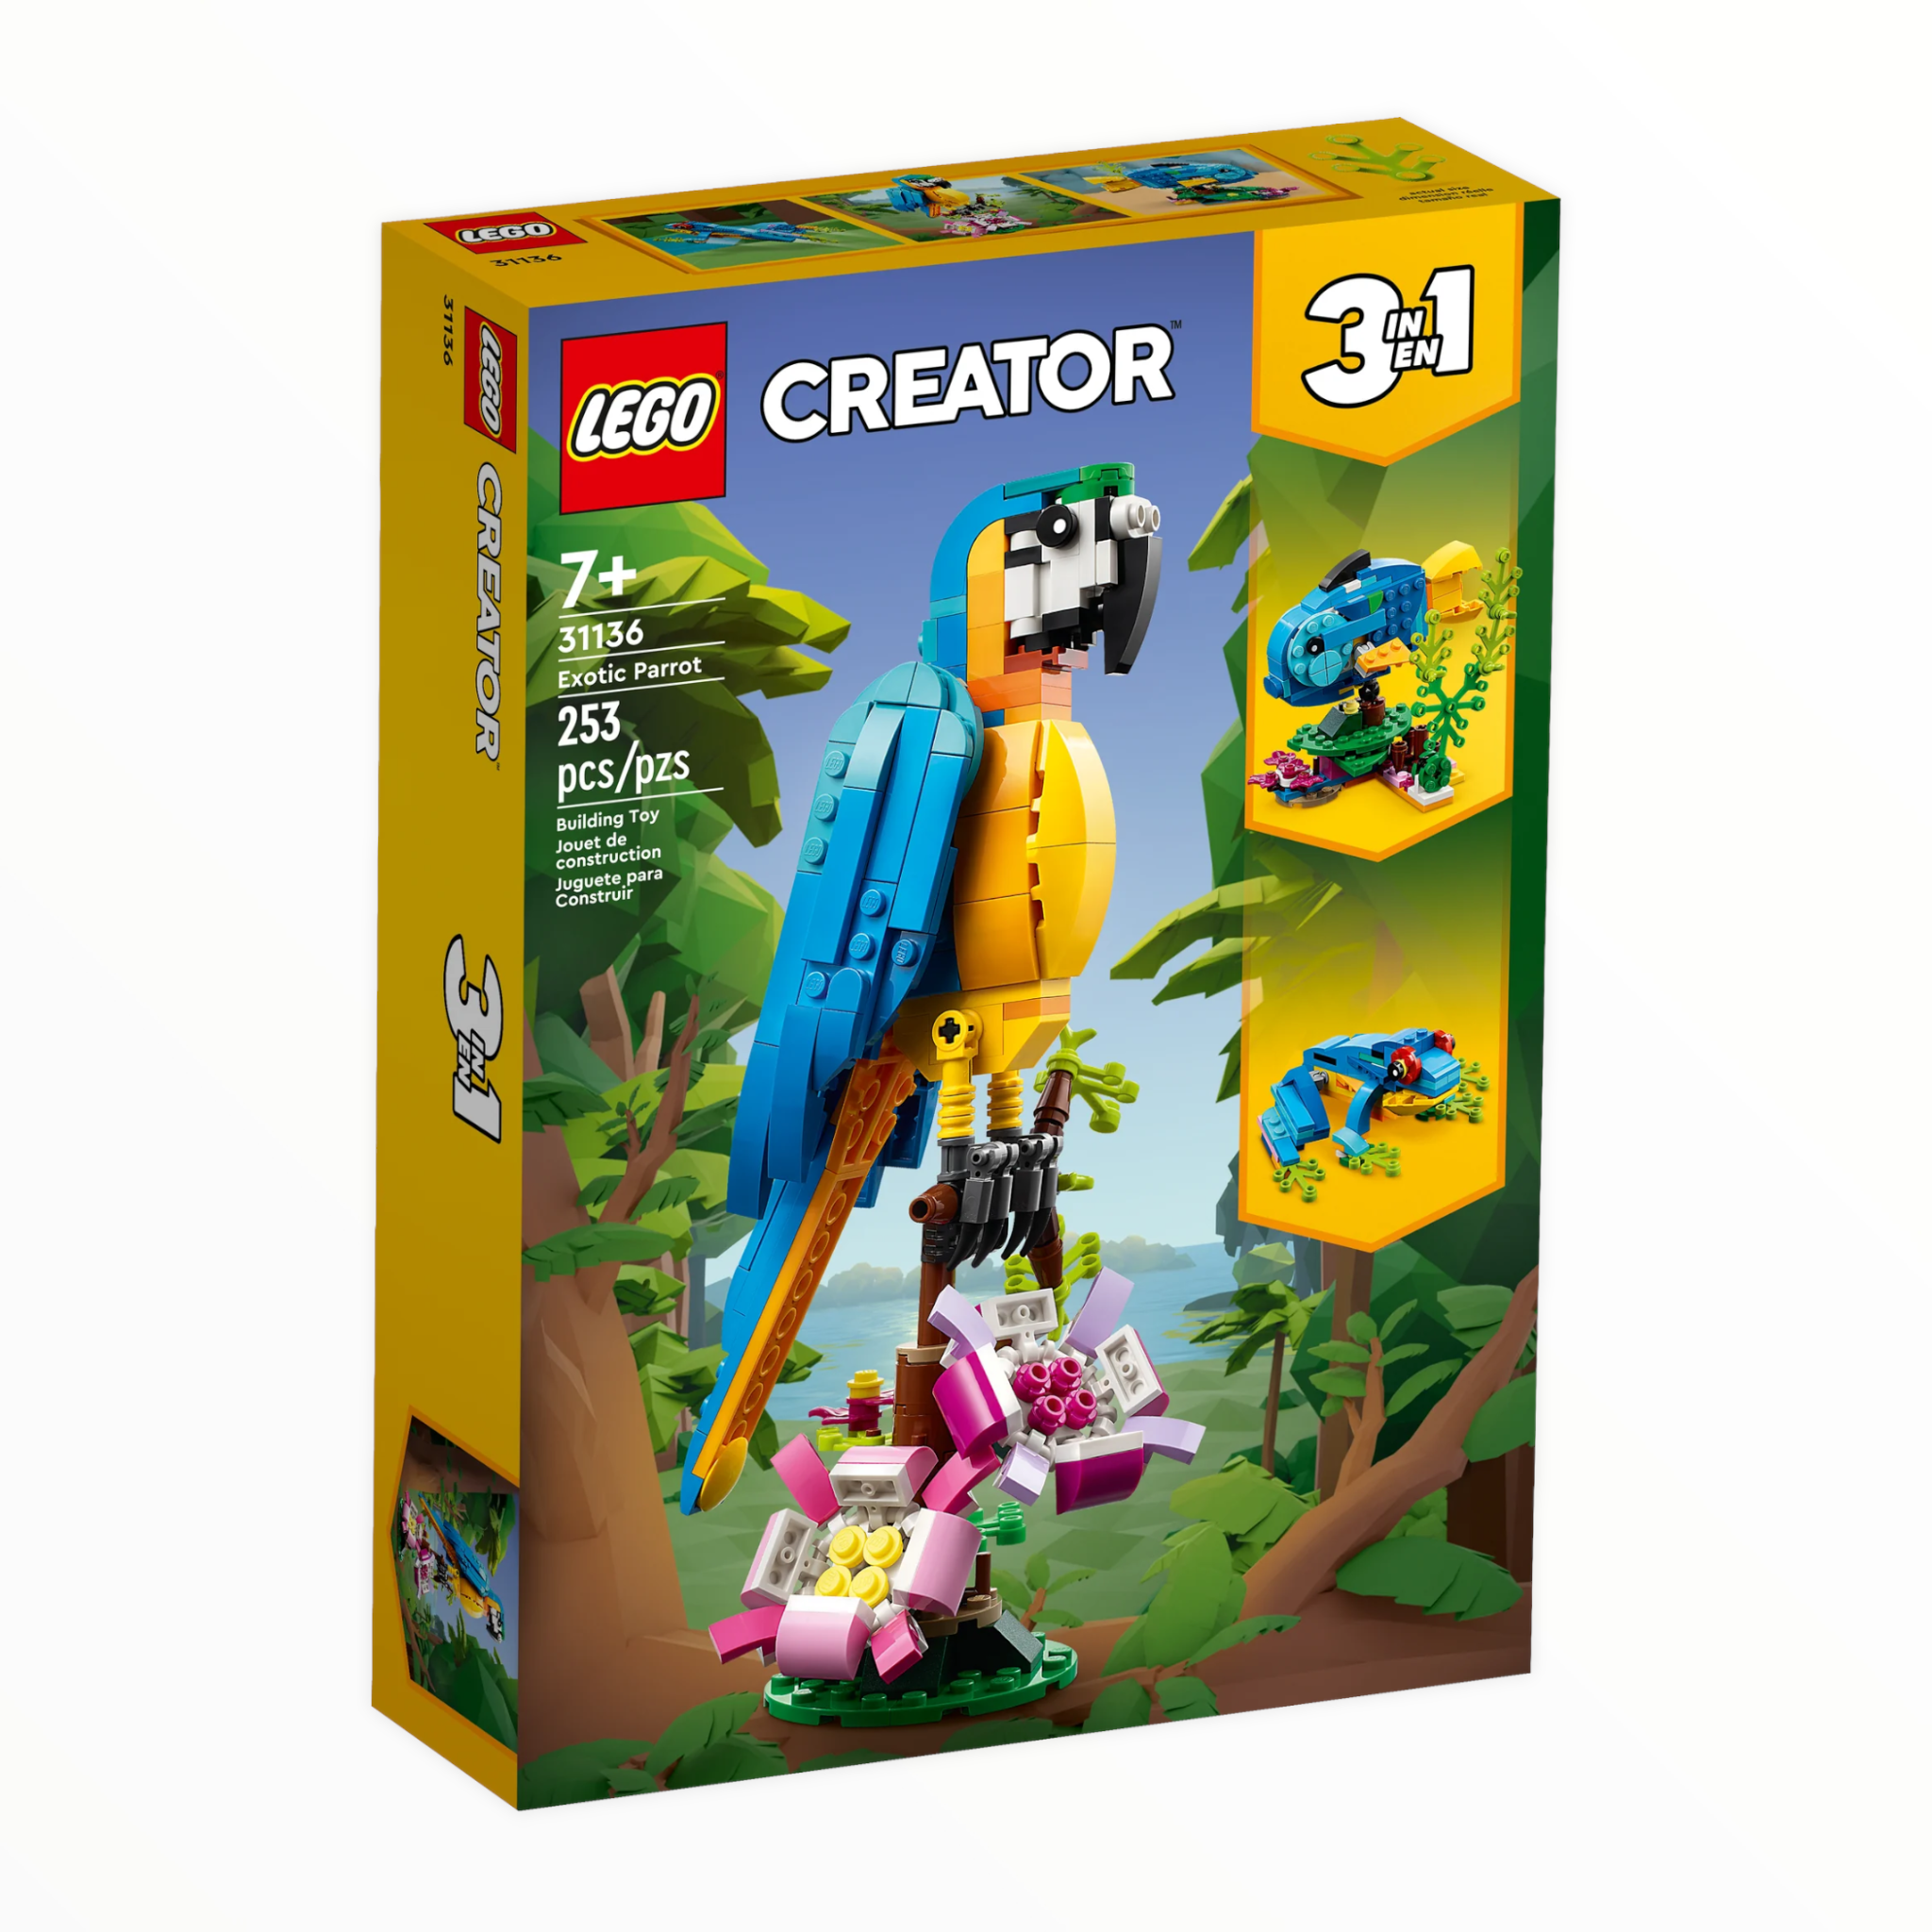 31136 Creator Exotic Parrot